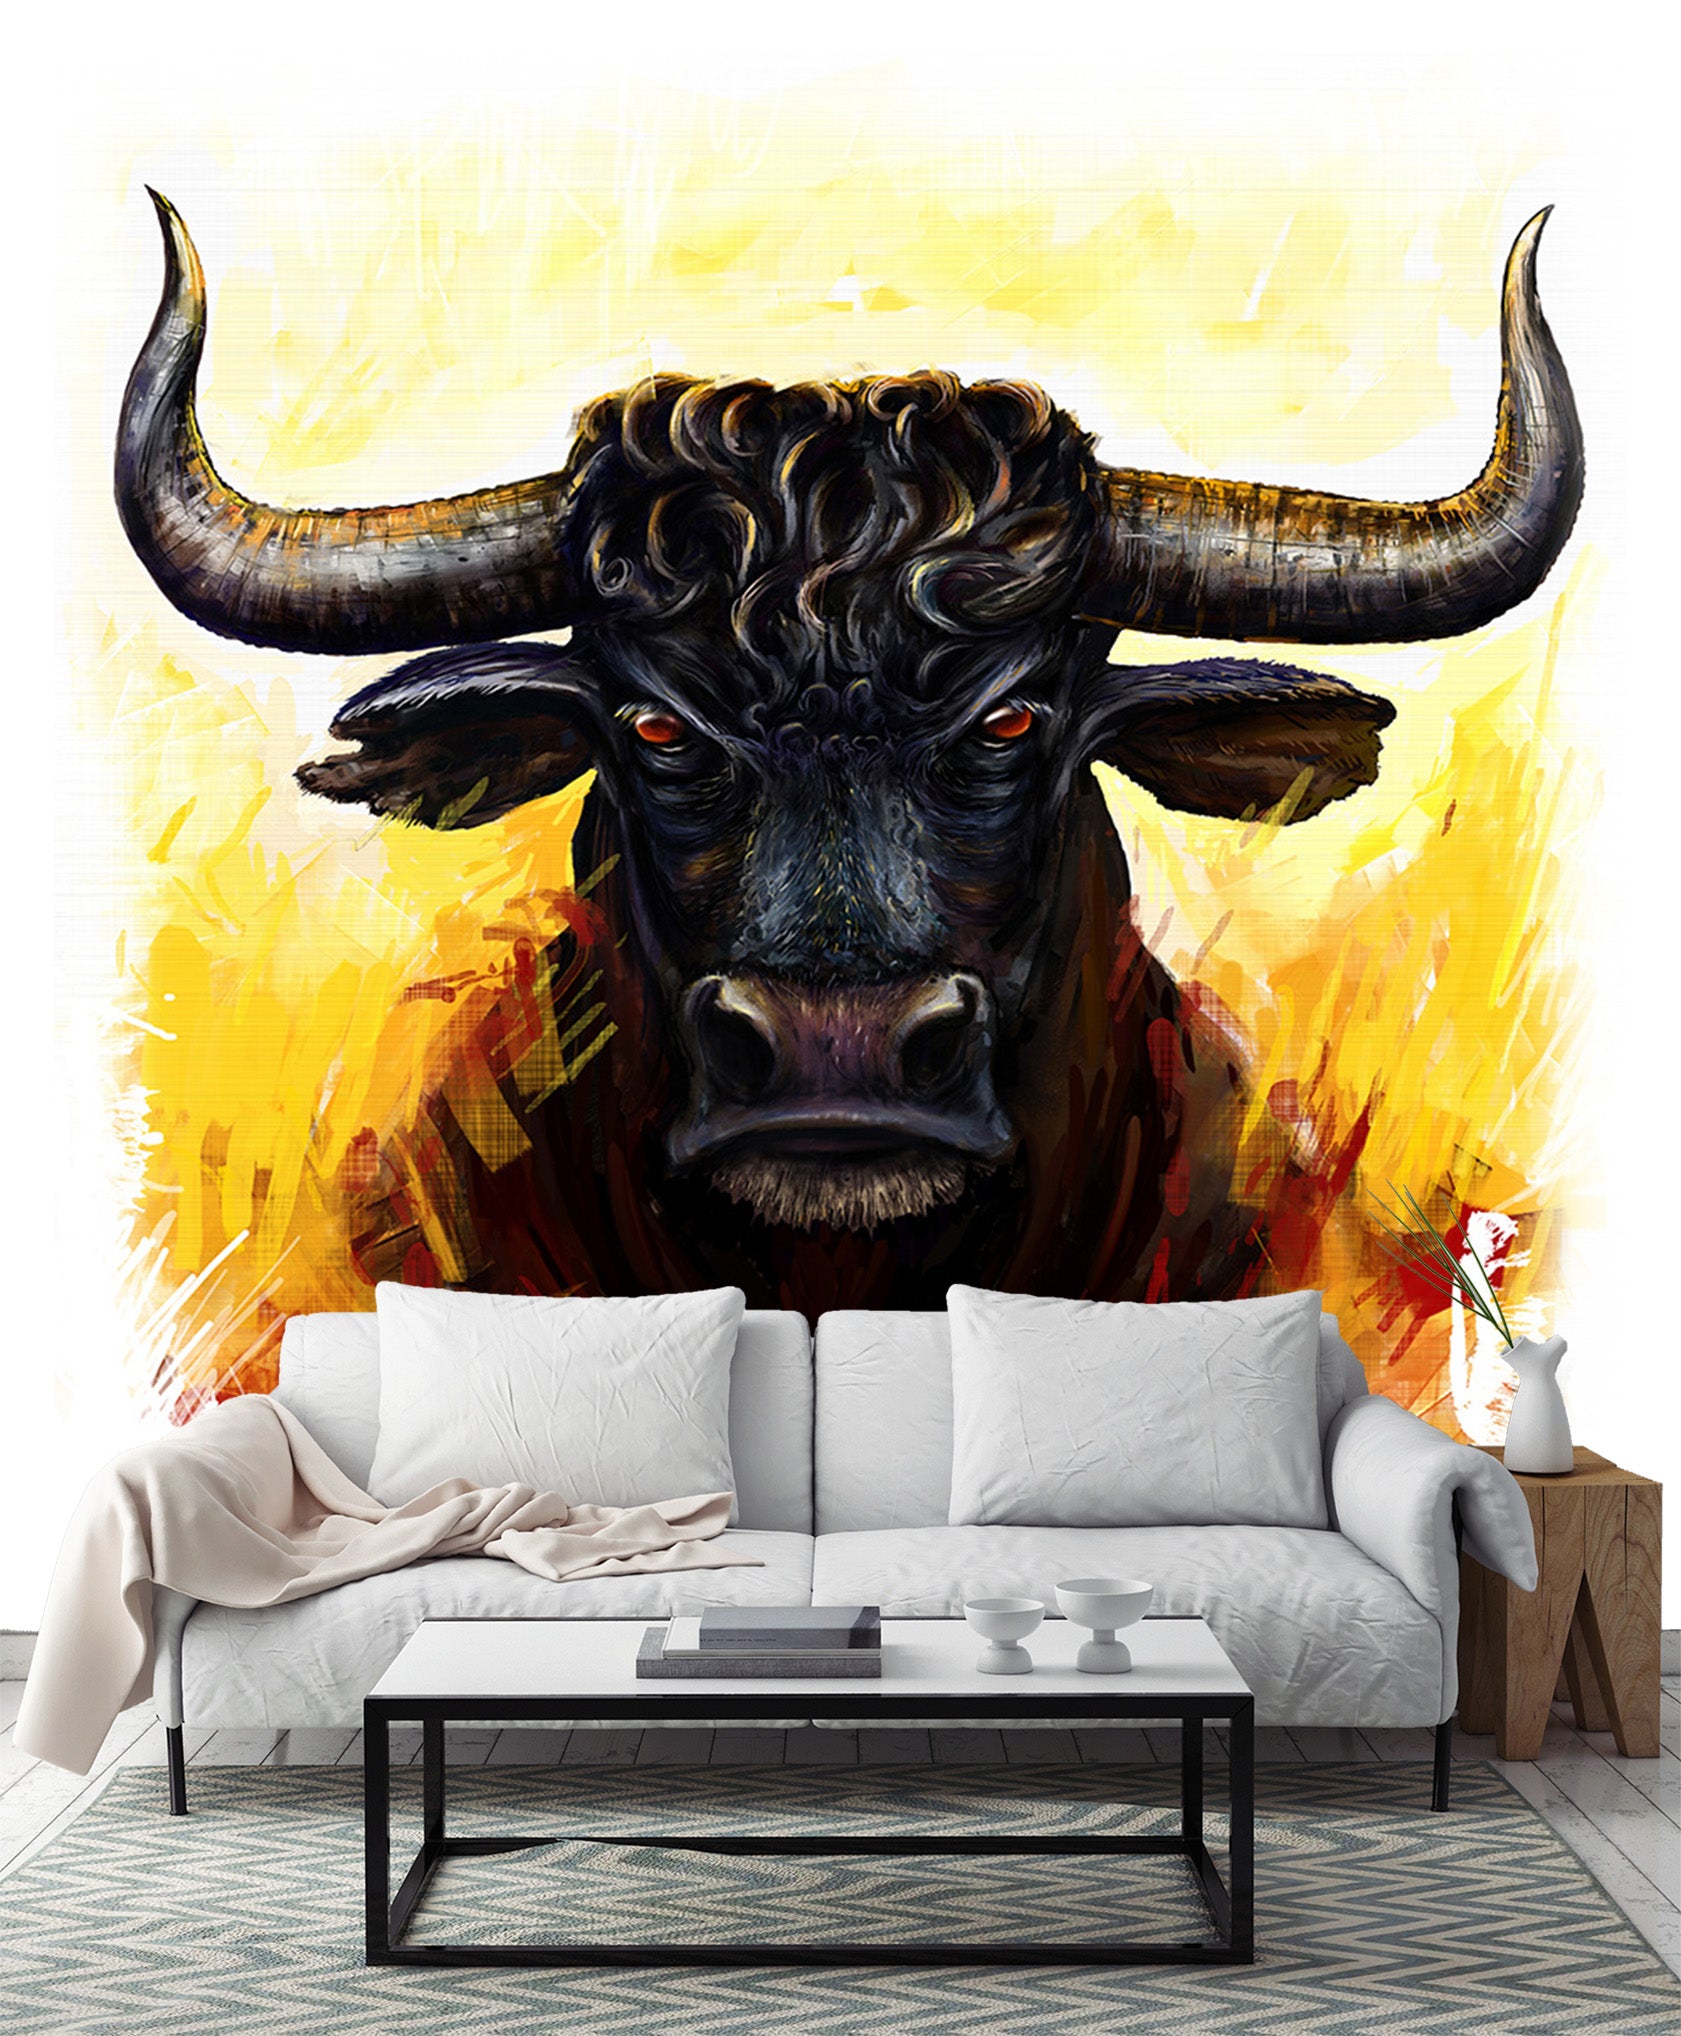 3D Black Bull Head 333 Wall Murals